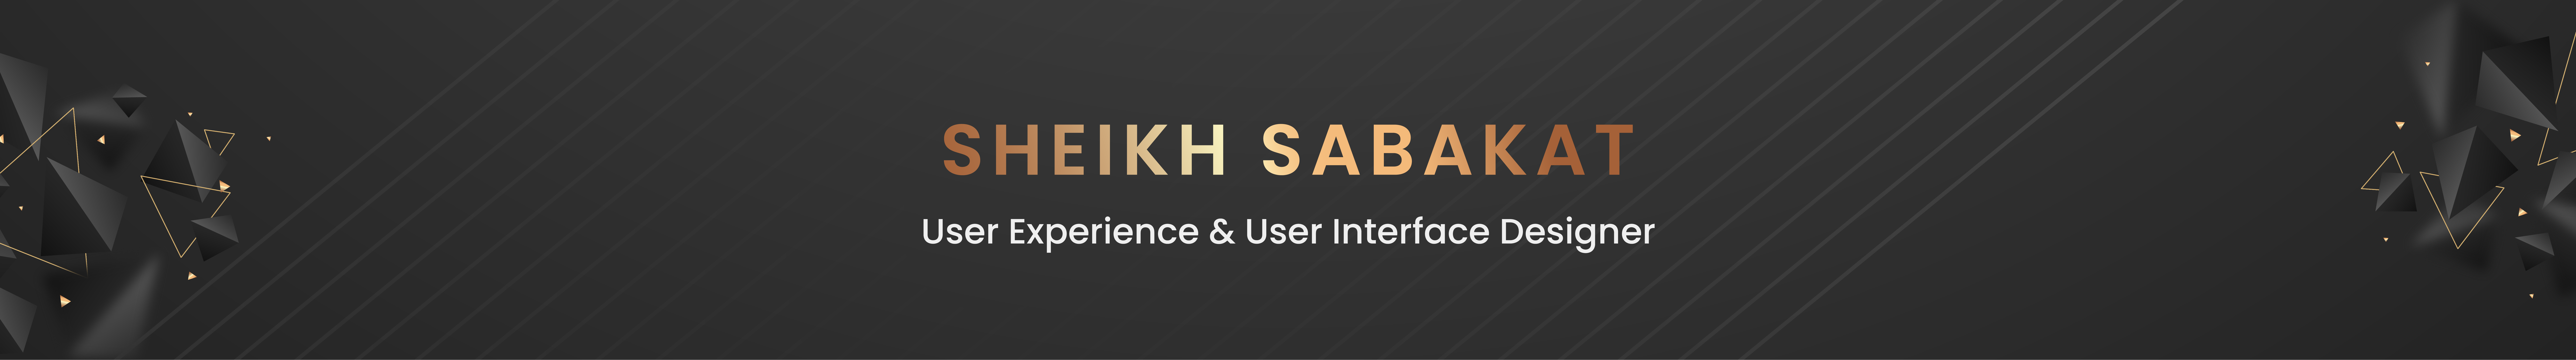 Banner de perfil de Sheikh Sabakat